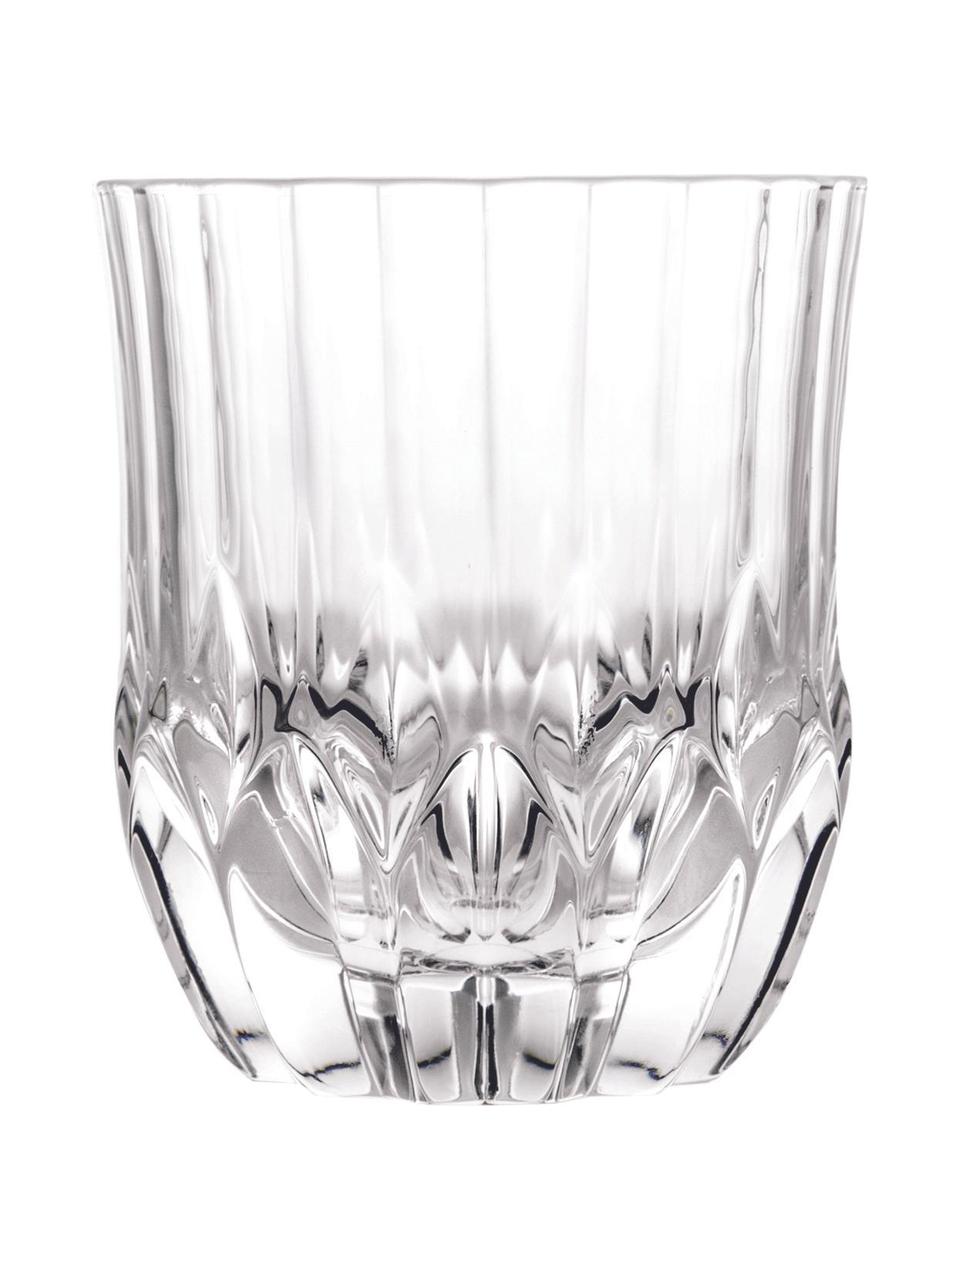 Bicchiere in cristallo con rilievo Adagio 6 pz, Cristallo, Trasparente, Ø 9 x Alt. 10 cm. 350 ml